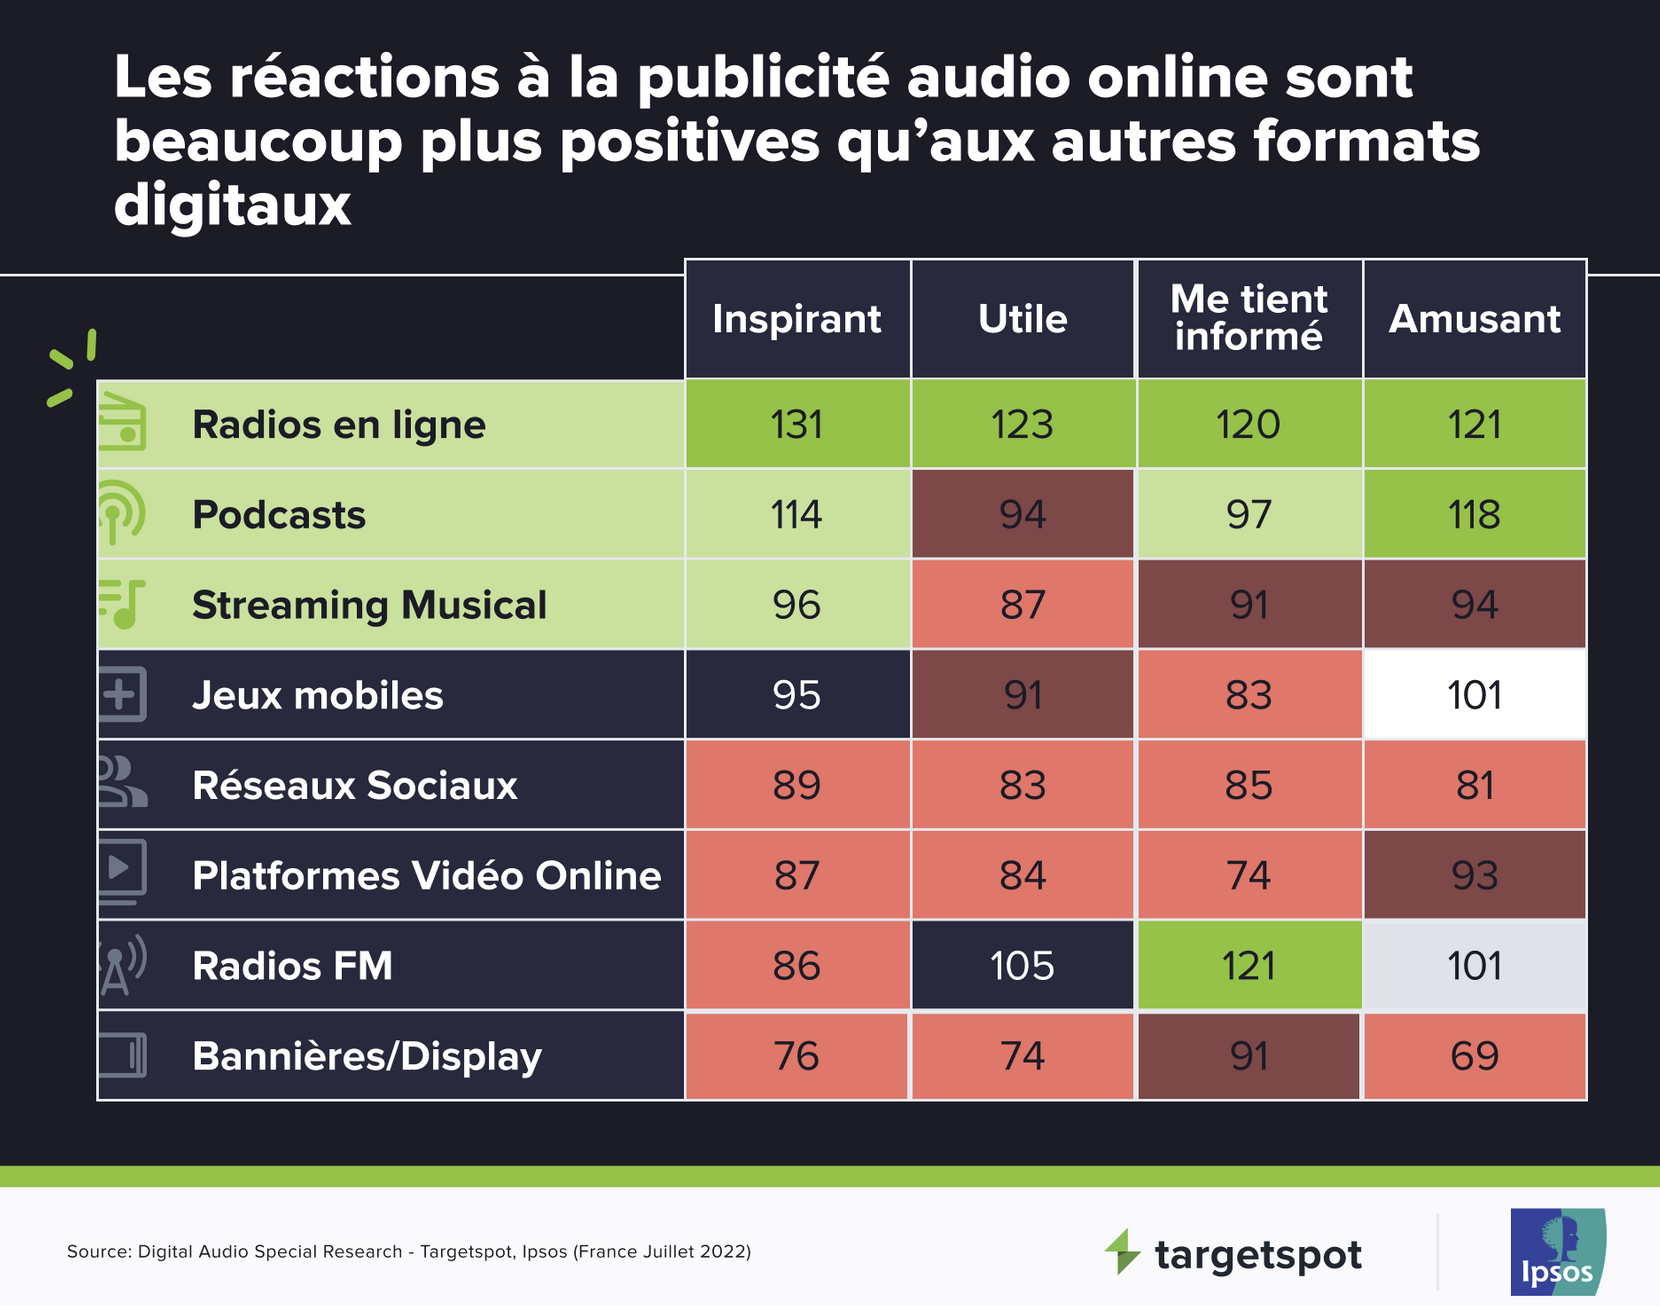 Targetspot dévoile une étude sur la publicité audio digitale en France